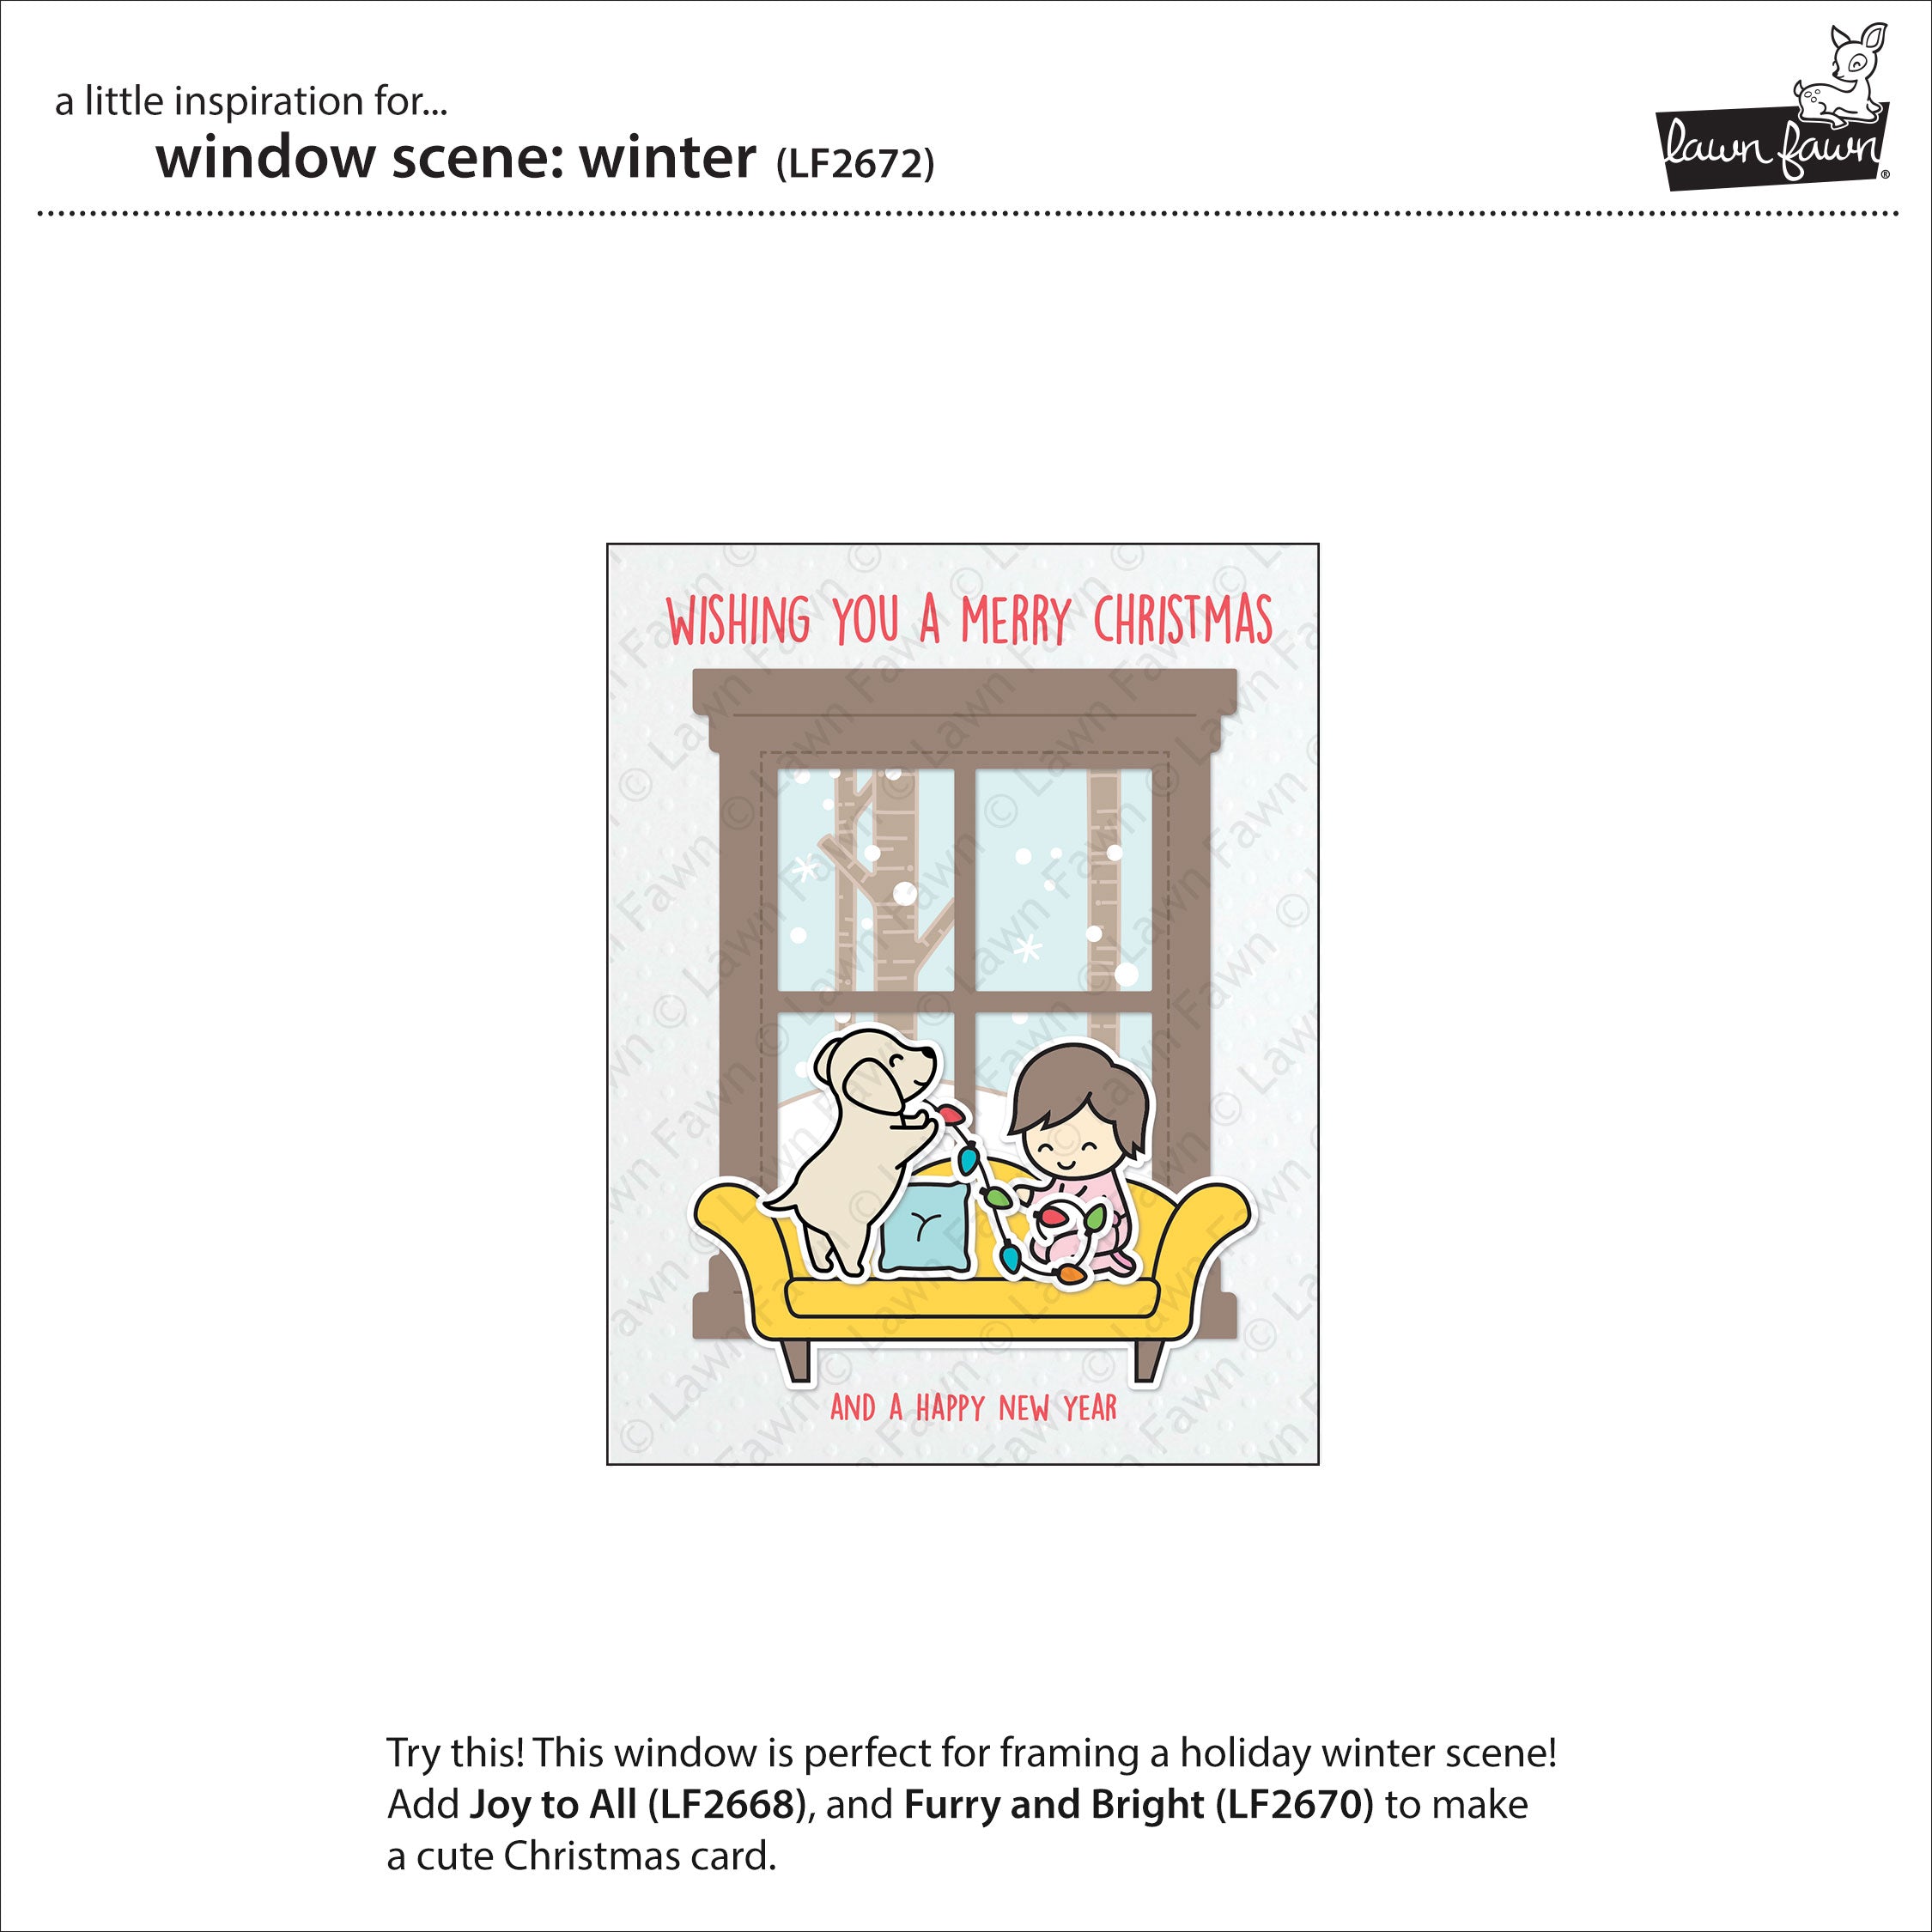 window scene: winter